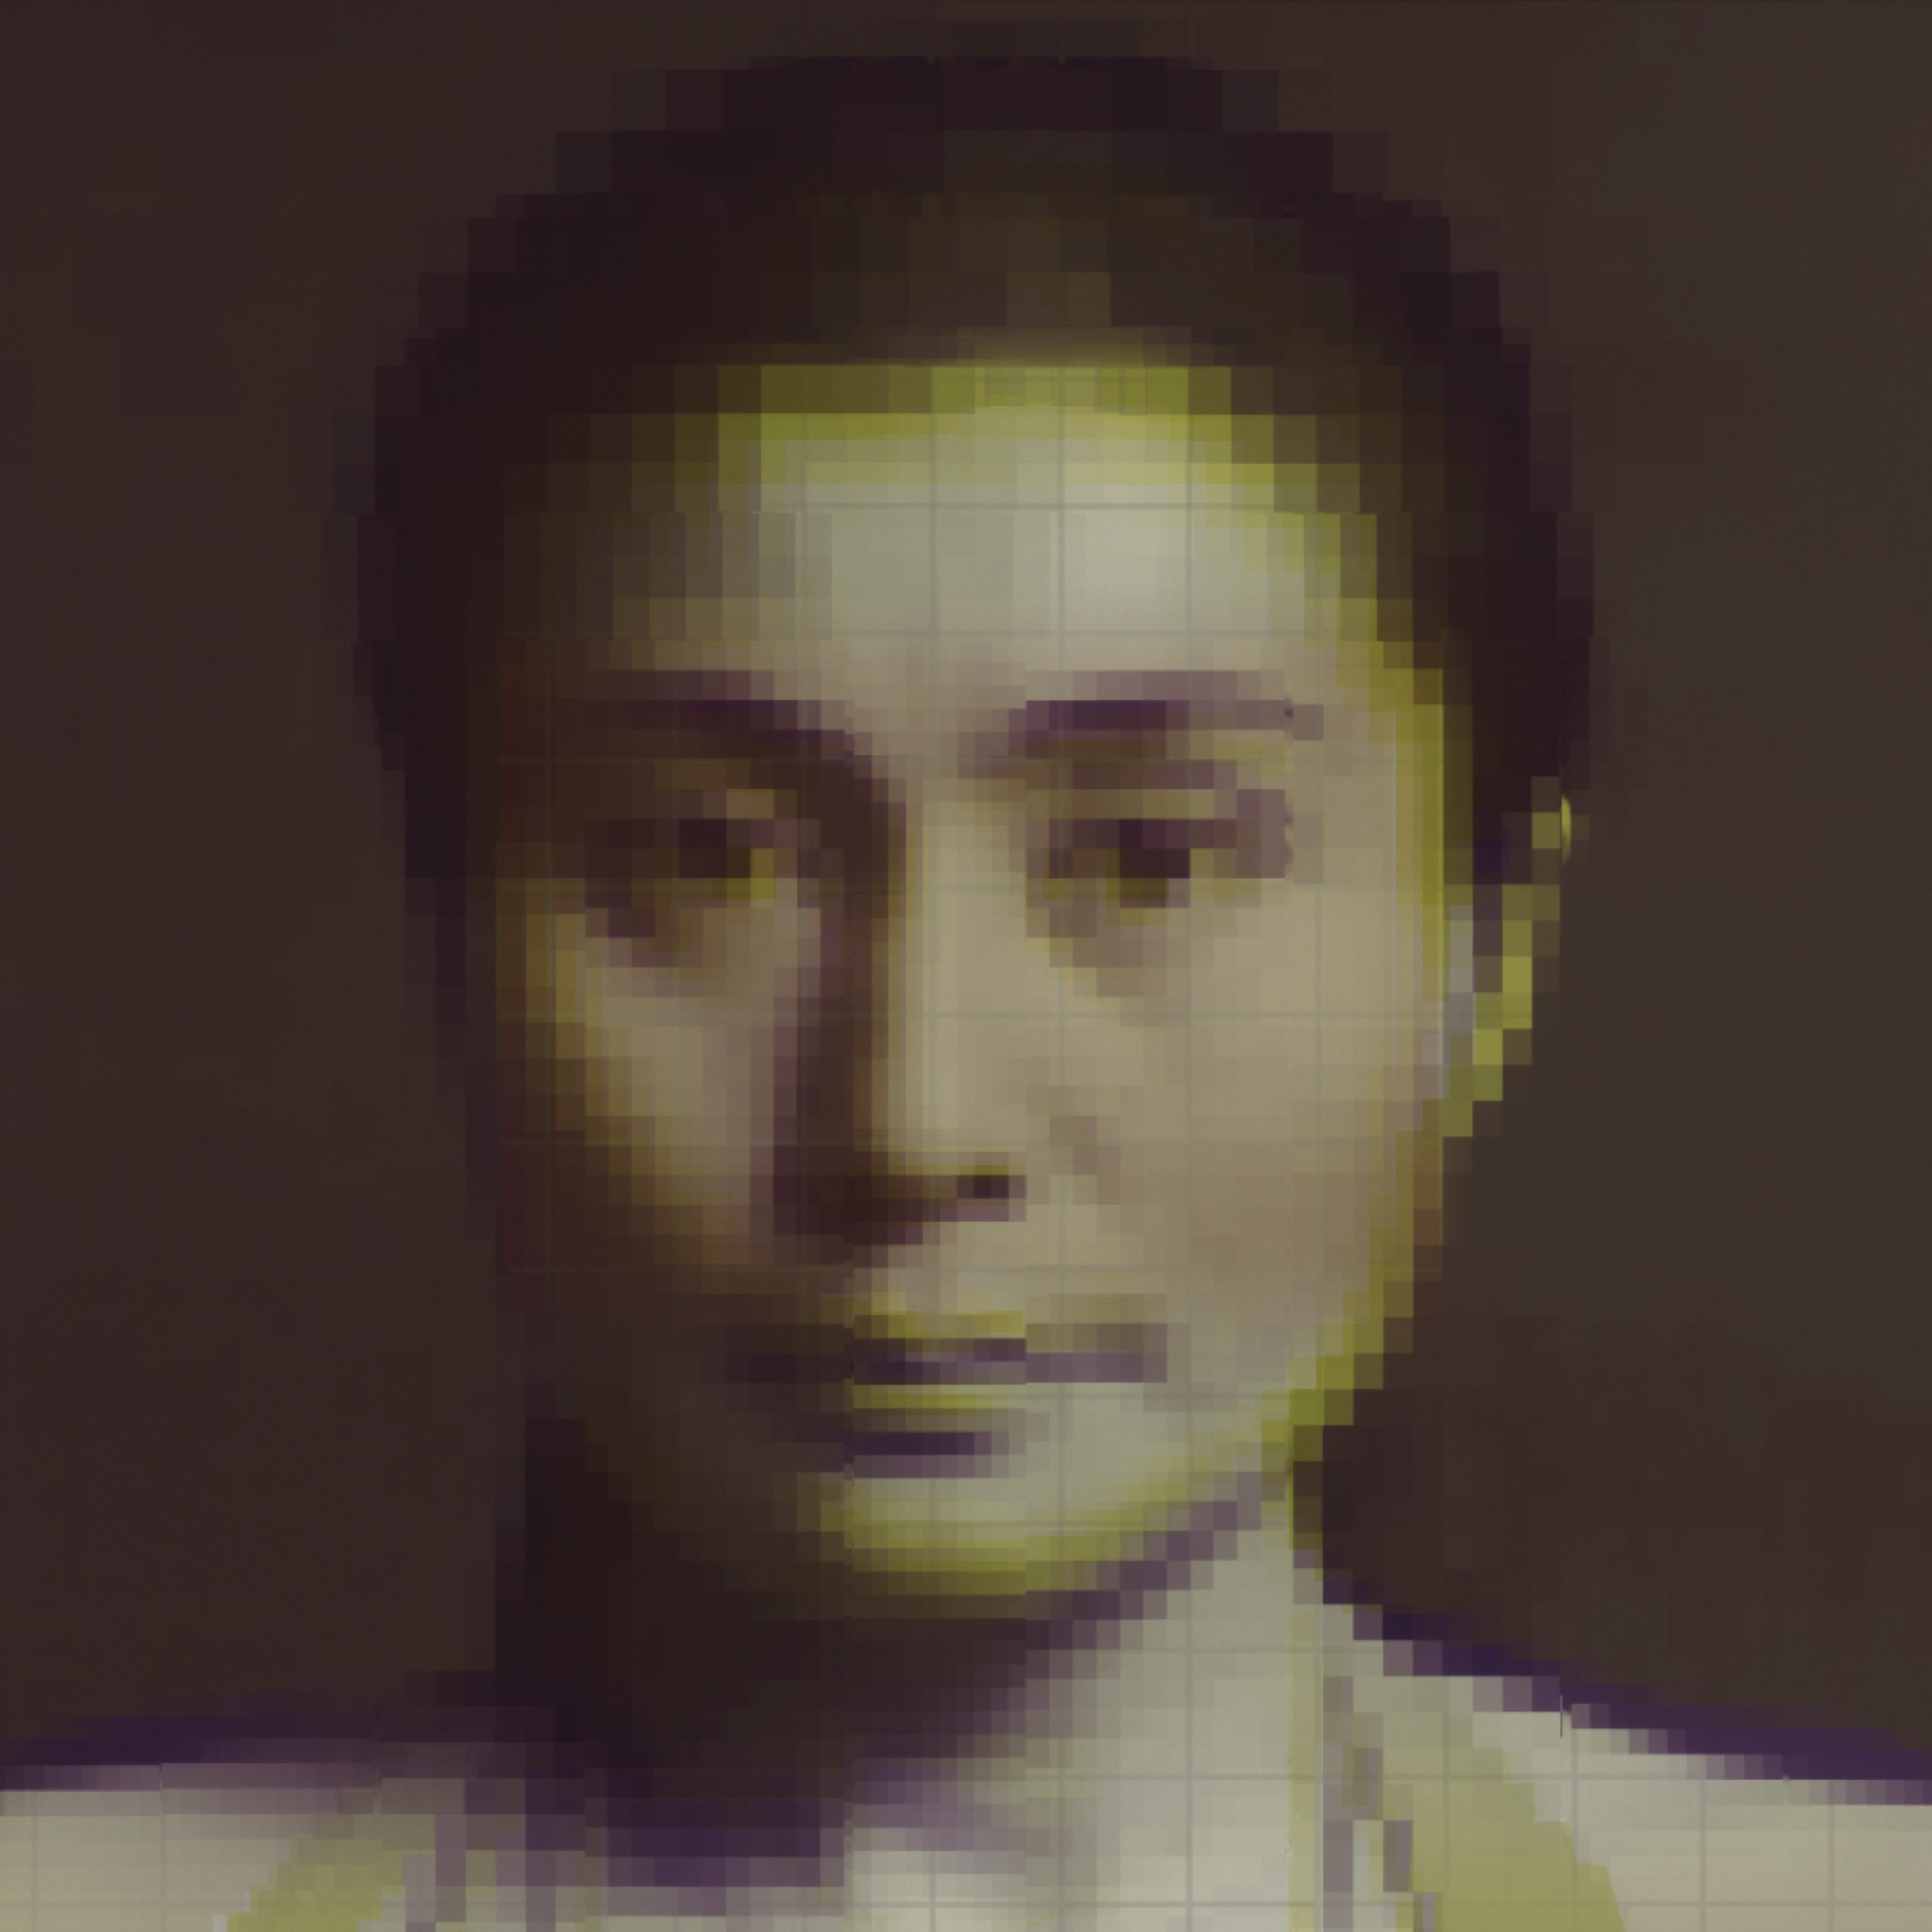 Pixalated headshot photo of Yoko Ono